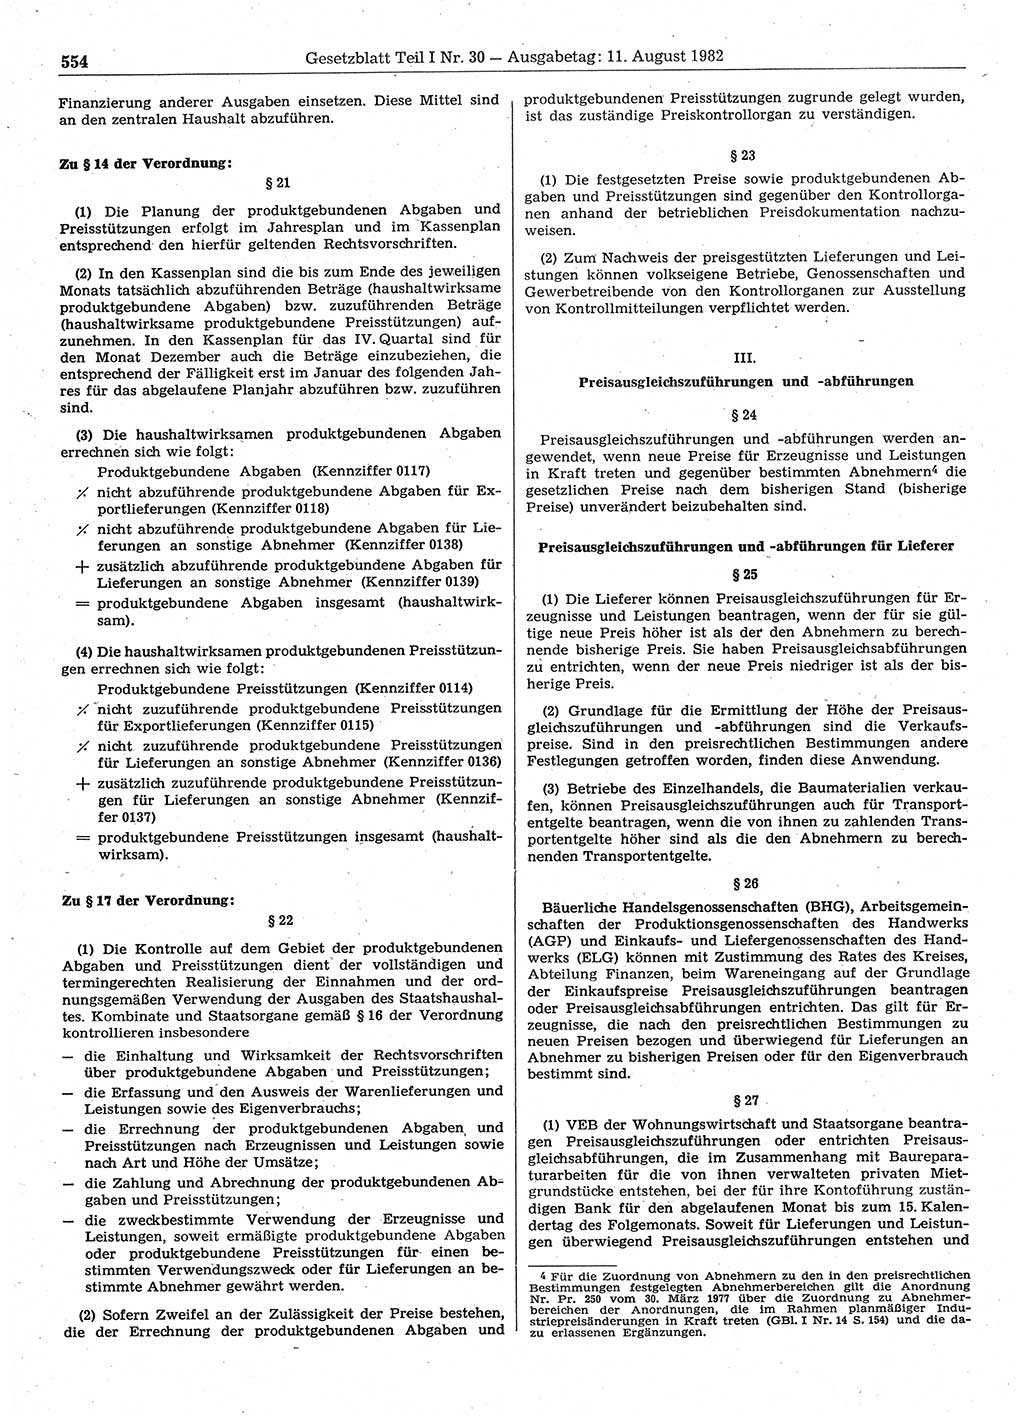 Gesetzblatt (GBl.) der Deutschen Demokratischen Republik (DDR) Teil Ⅰ 1982, Seite 554 (GBl. DDR Ⅰ 1982, S. 554)